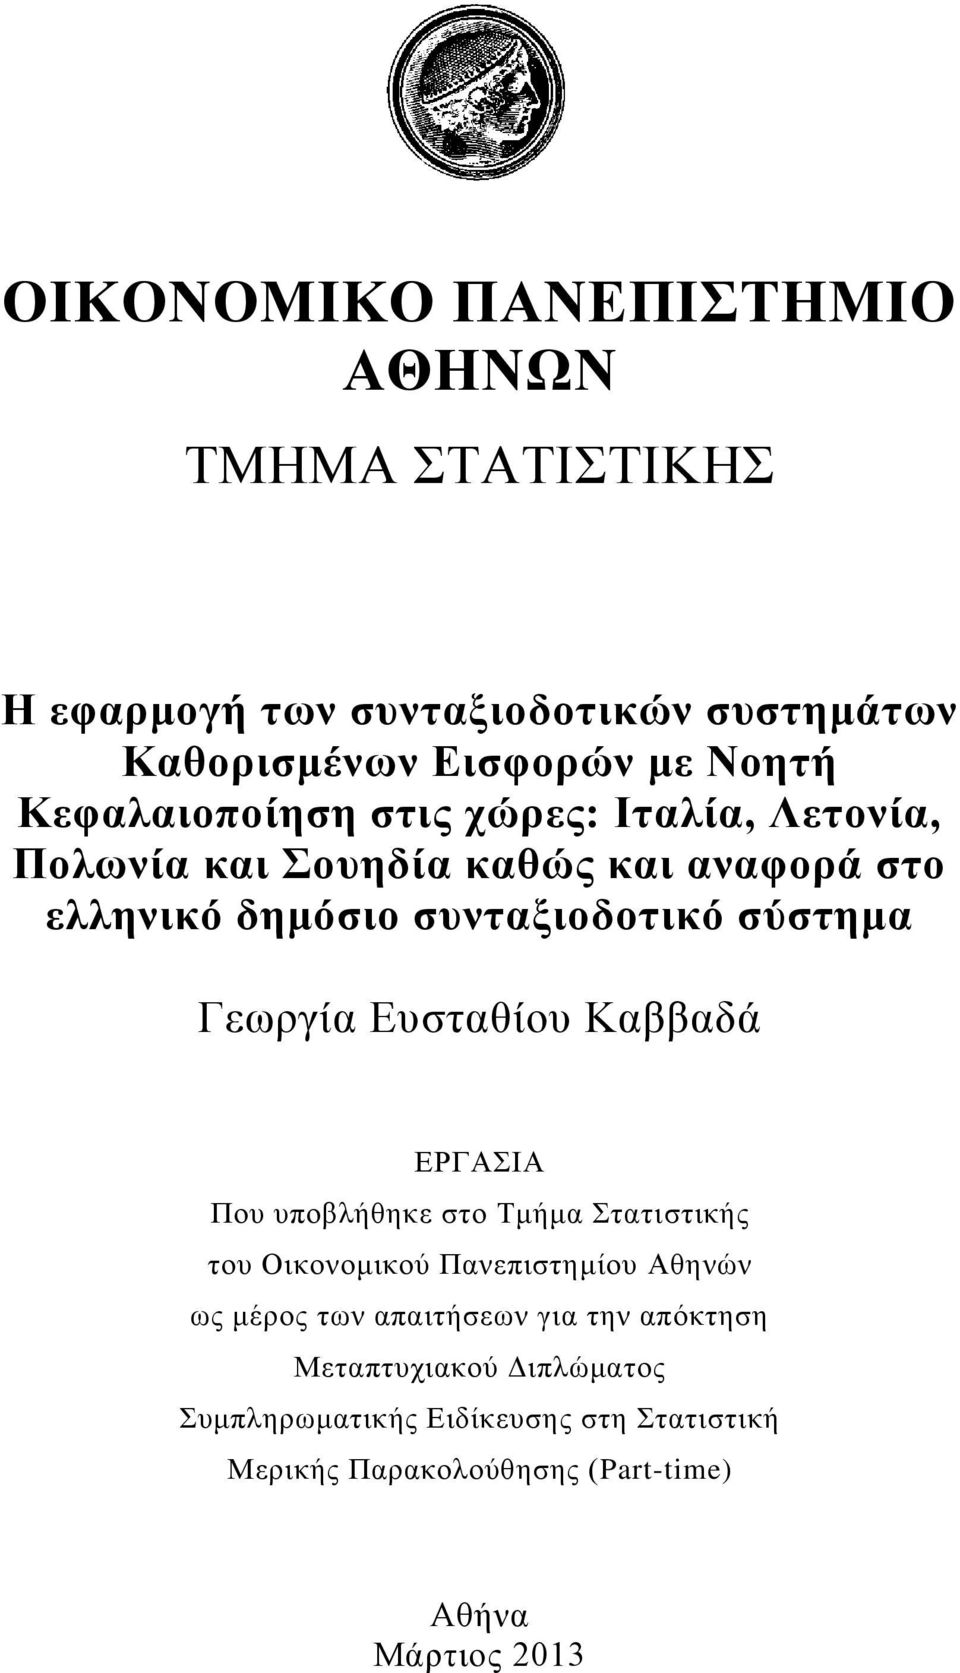 Γεωργία Ευσταθίου Καββαδά ΕΡΓΑΣΙΑ Που υποβλήθηκε στο Τμήμα Στατιστικής του Οικονομικού Πανεπιστημίου Αθηνών ως μέρος των